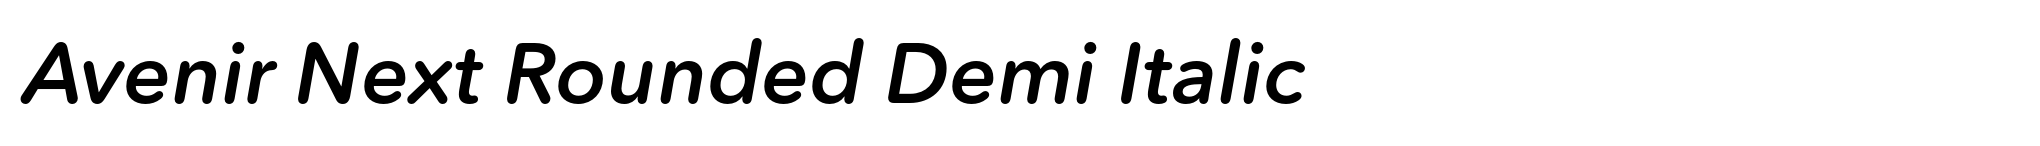 Avenir Next Rounded Demi Italic image